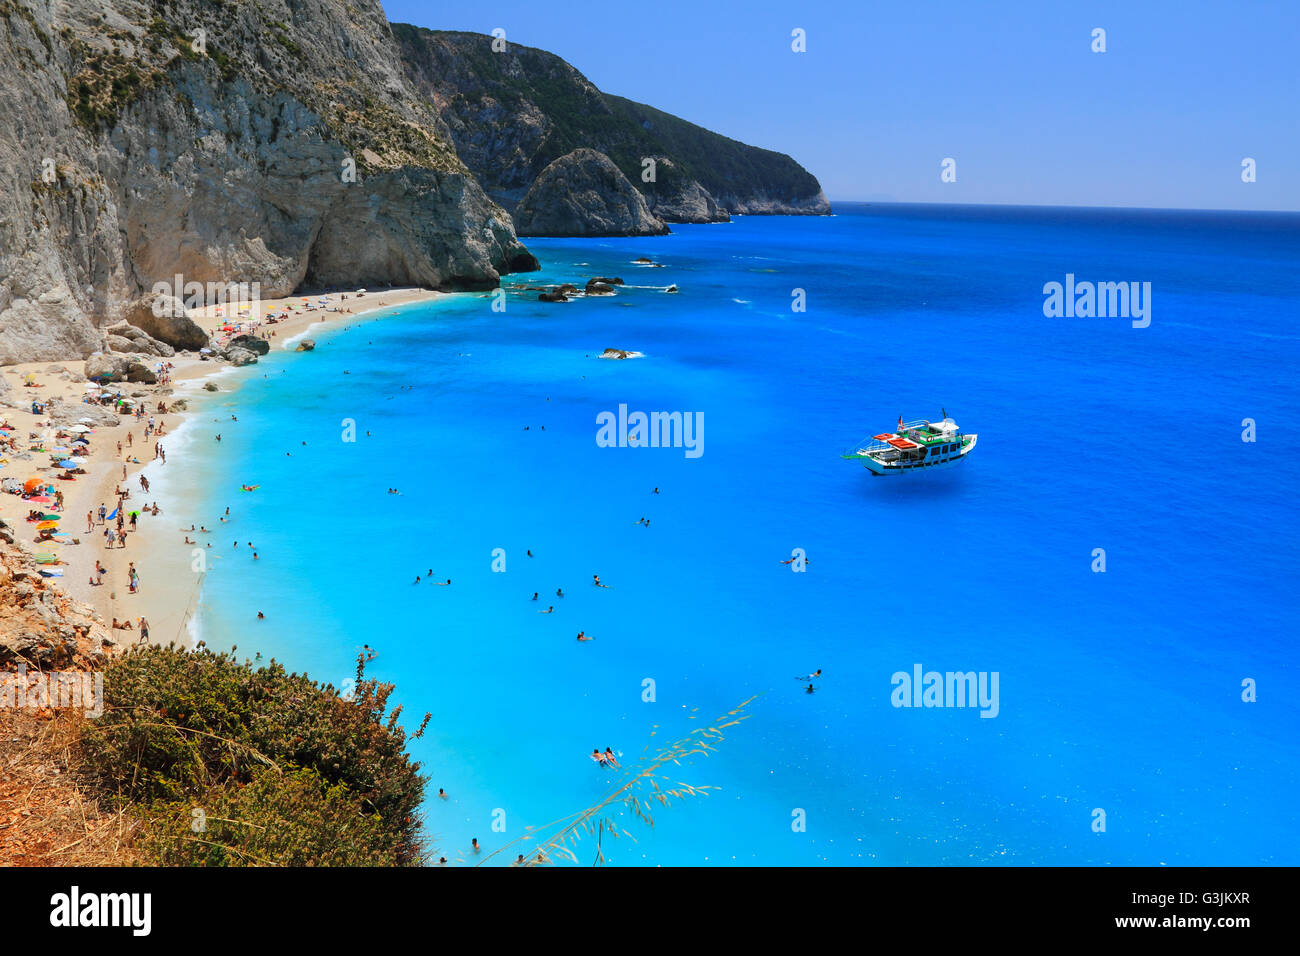 Lefkada island Stock Photo